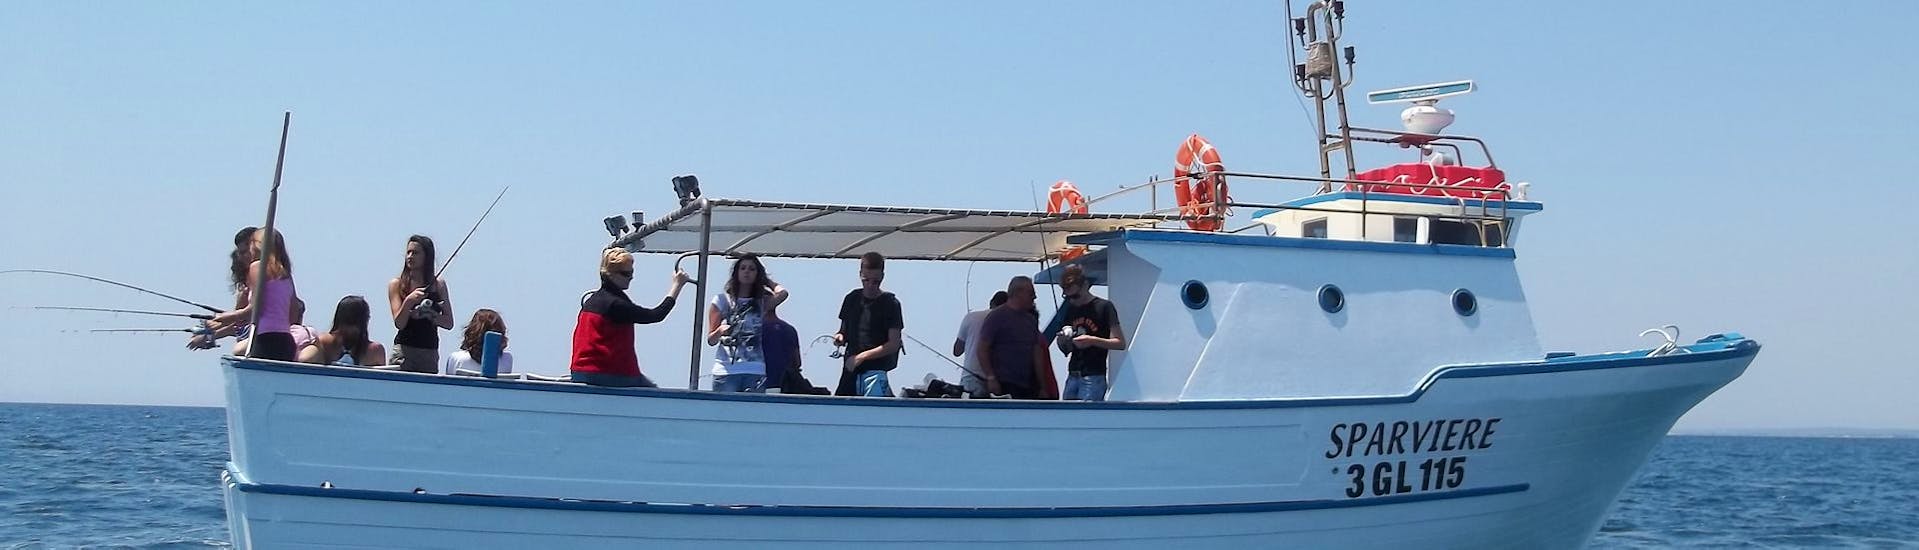 Foto de un barco de Pescaturismo Vivereilmare Porto Cesareo durante el paseo en Barco en Porto Cesareo con Experiencia de Pesca.